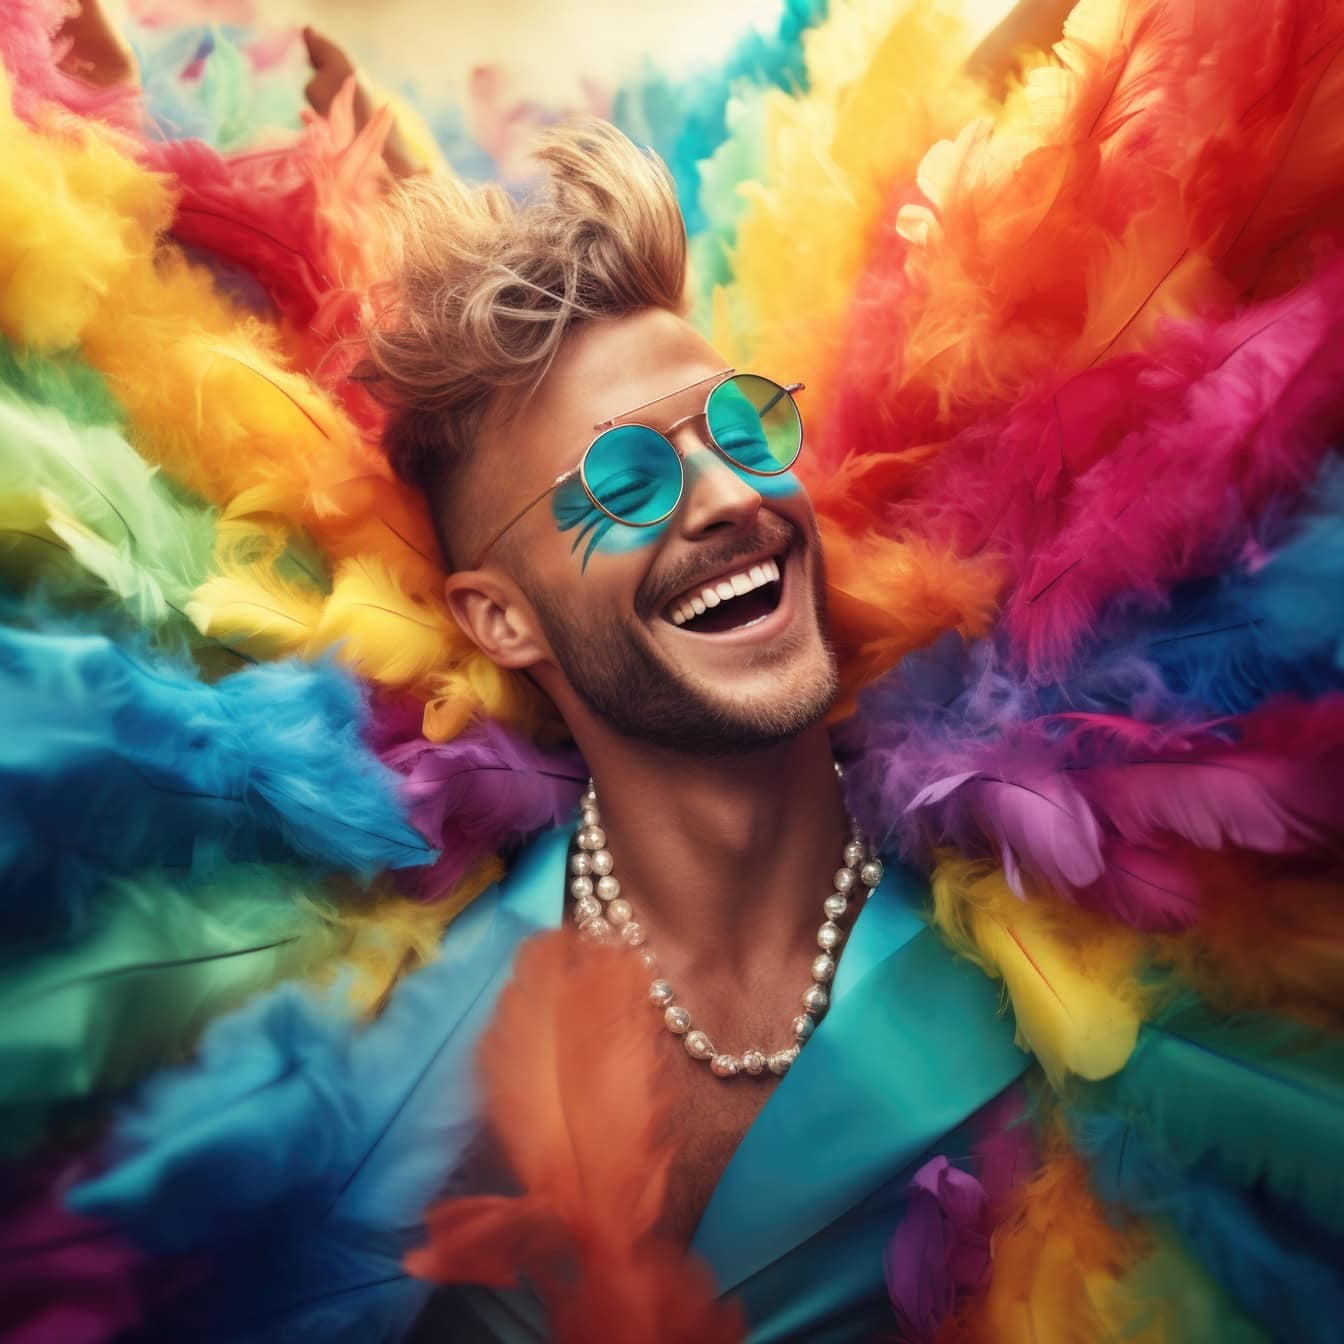 카니발에 진주 목걸이를 착용 한 화려한 깃털을 가진 웃는 젊은이, 자유와 행복의 삽화